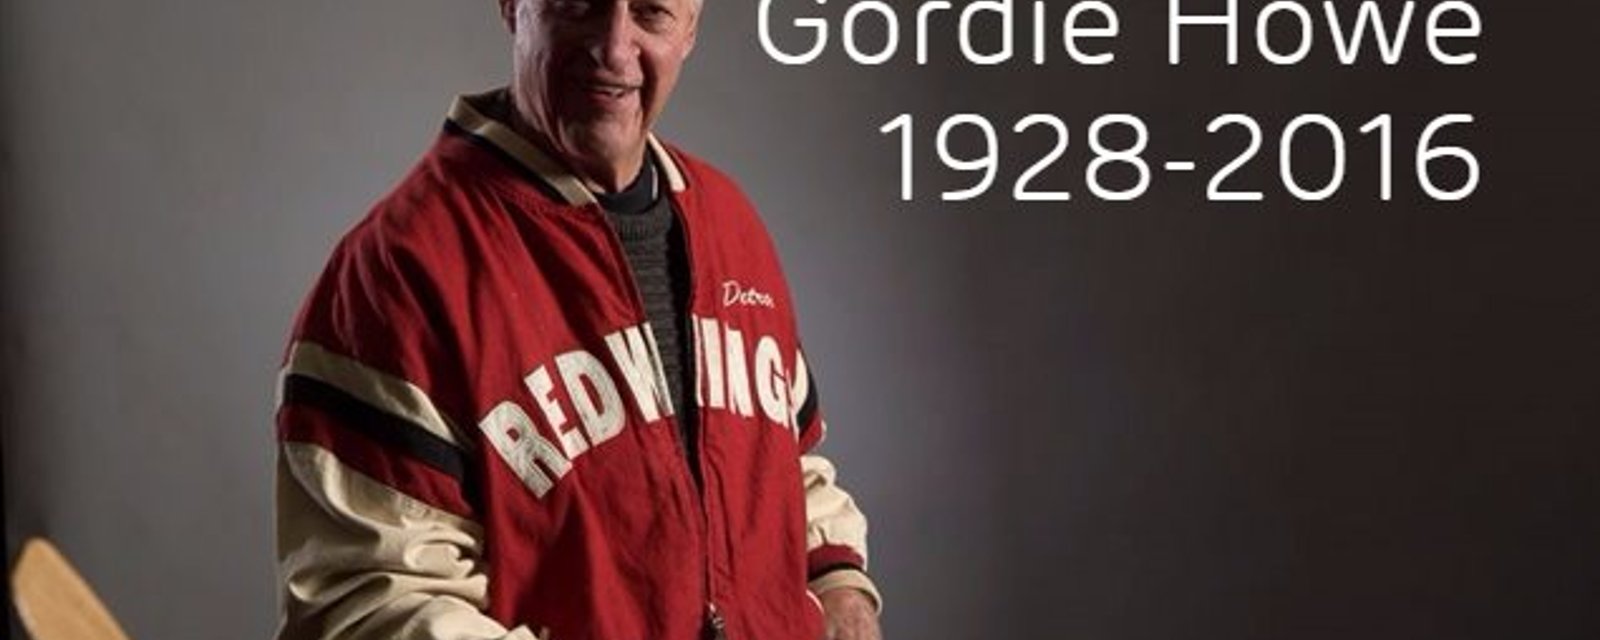 Tribute to Gordie Howe